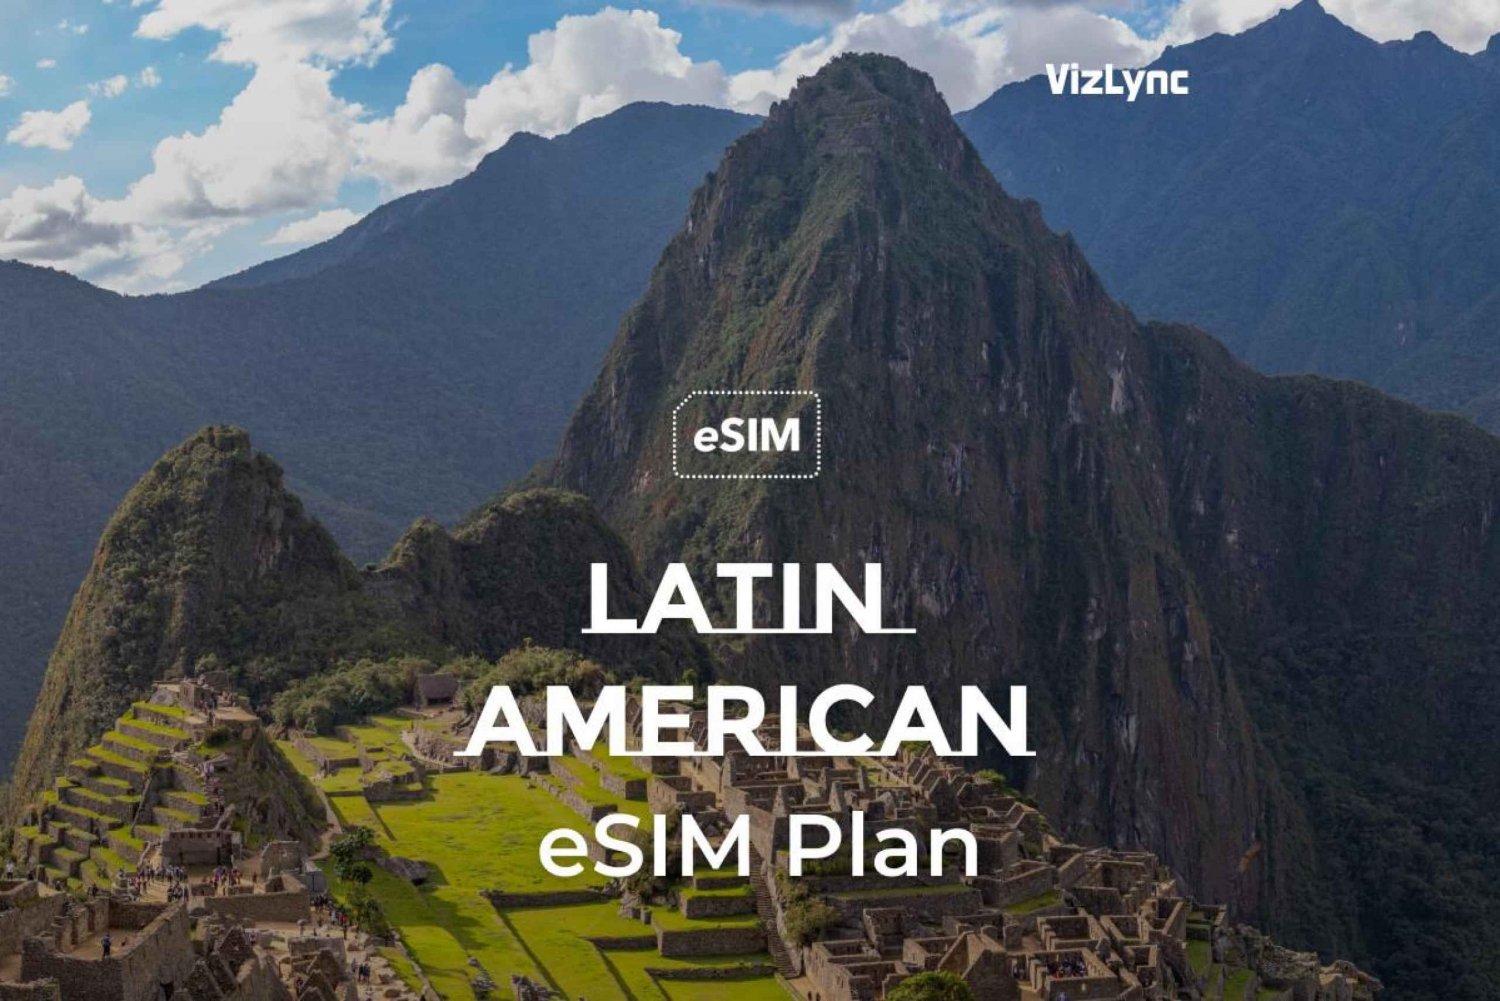 Håll kontakten över hela Latinamerika med våra datafria eSIM-kort